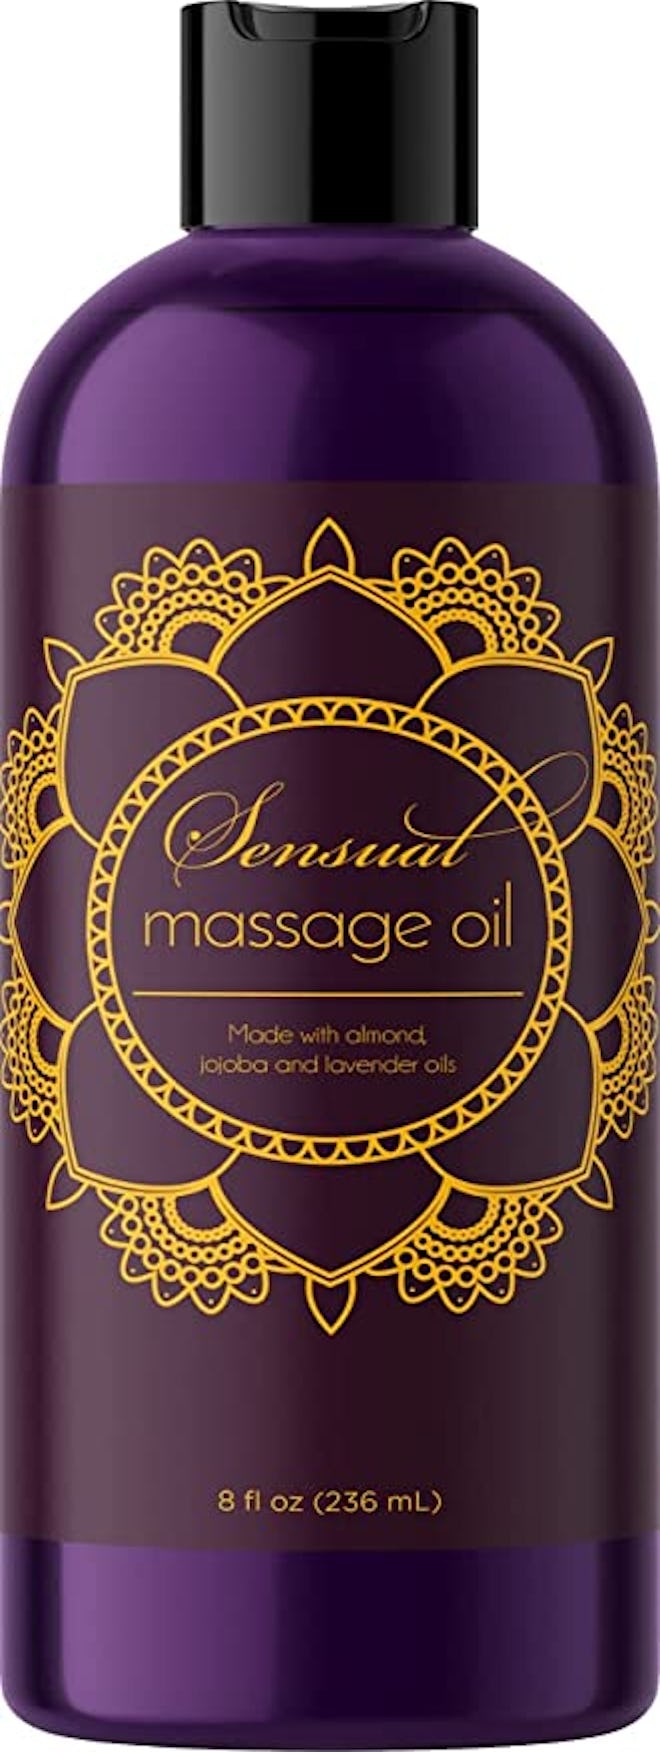 Aromatherapy Sensual Massage Oil